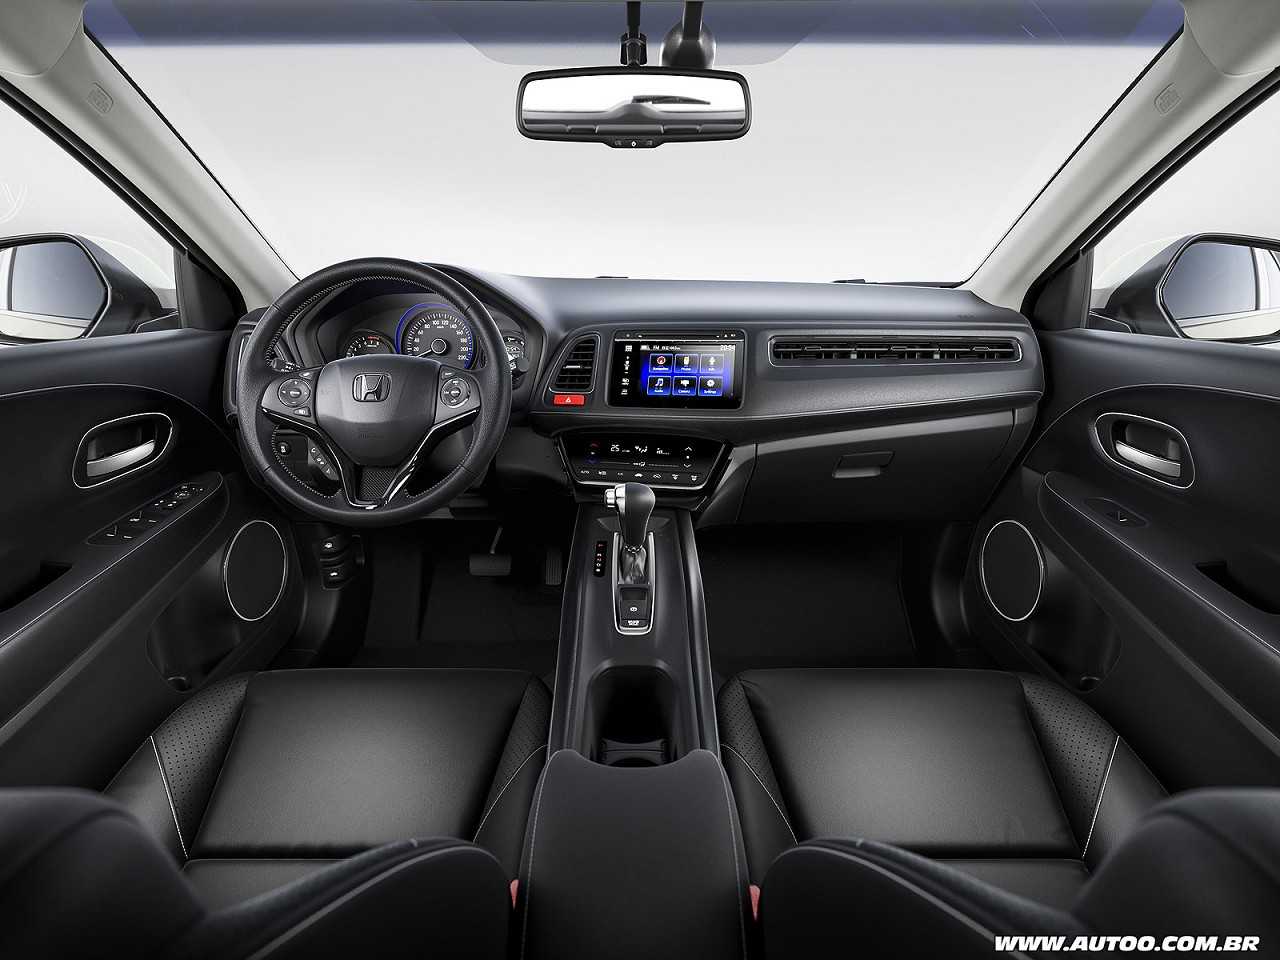 Opinião sobre o Hyundai Creta e o Honda HR-V